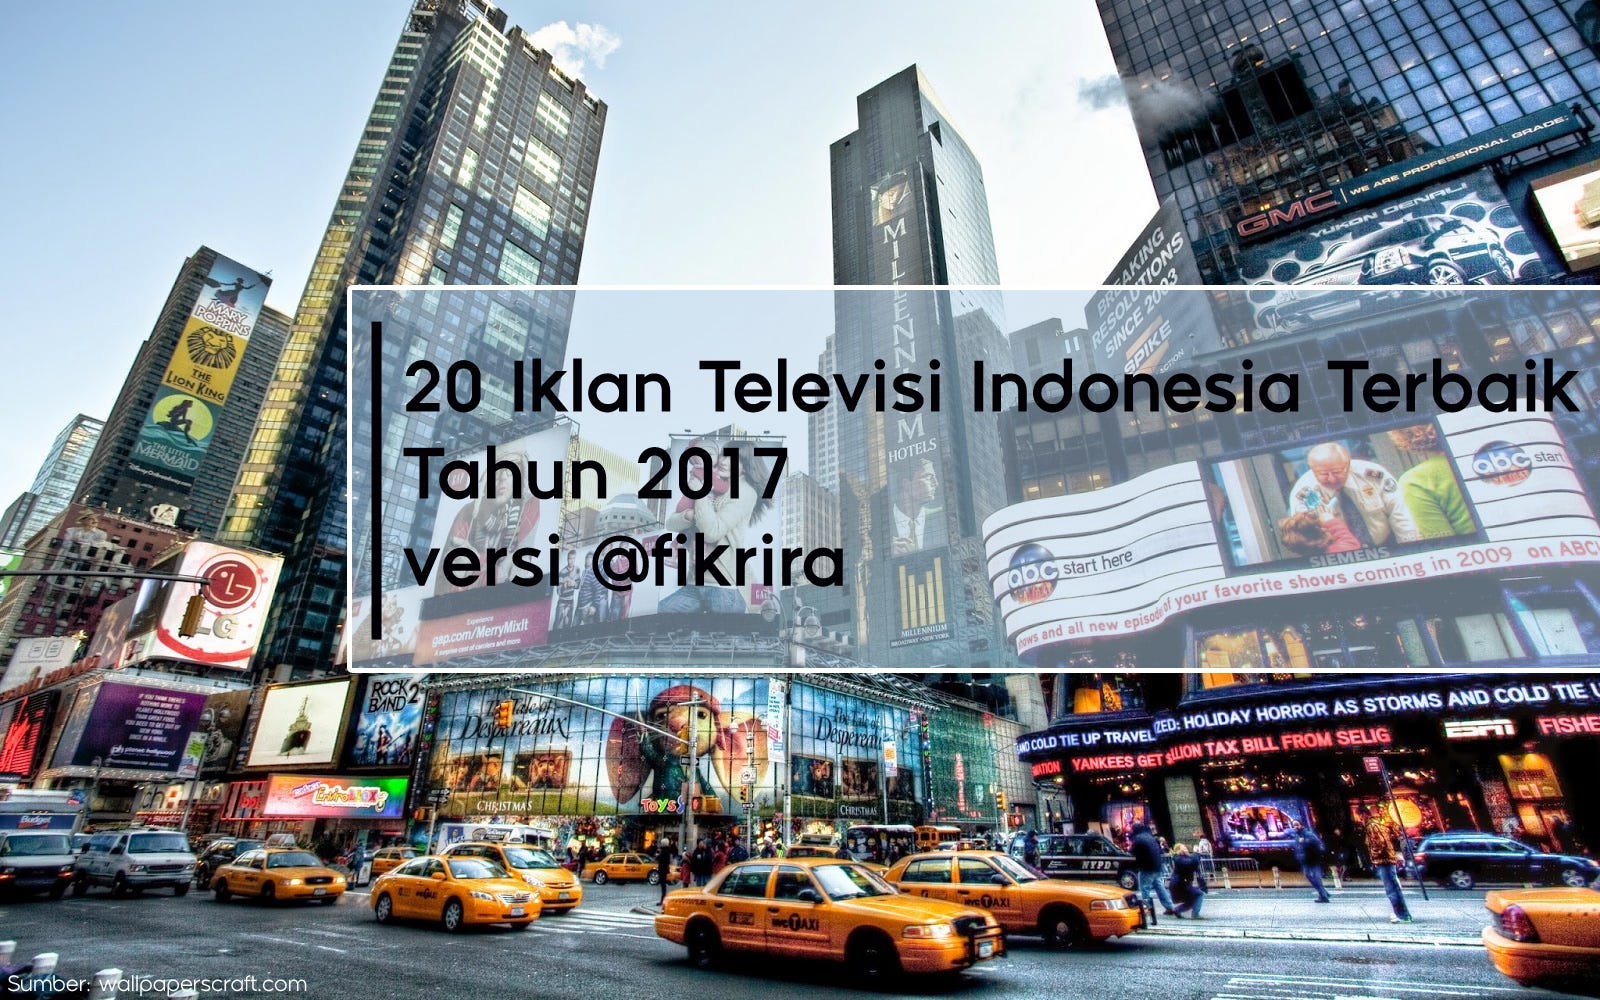 20 Iklan Televisi Indonesia Terbaik Tahun 2017 Versi Fikrira